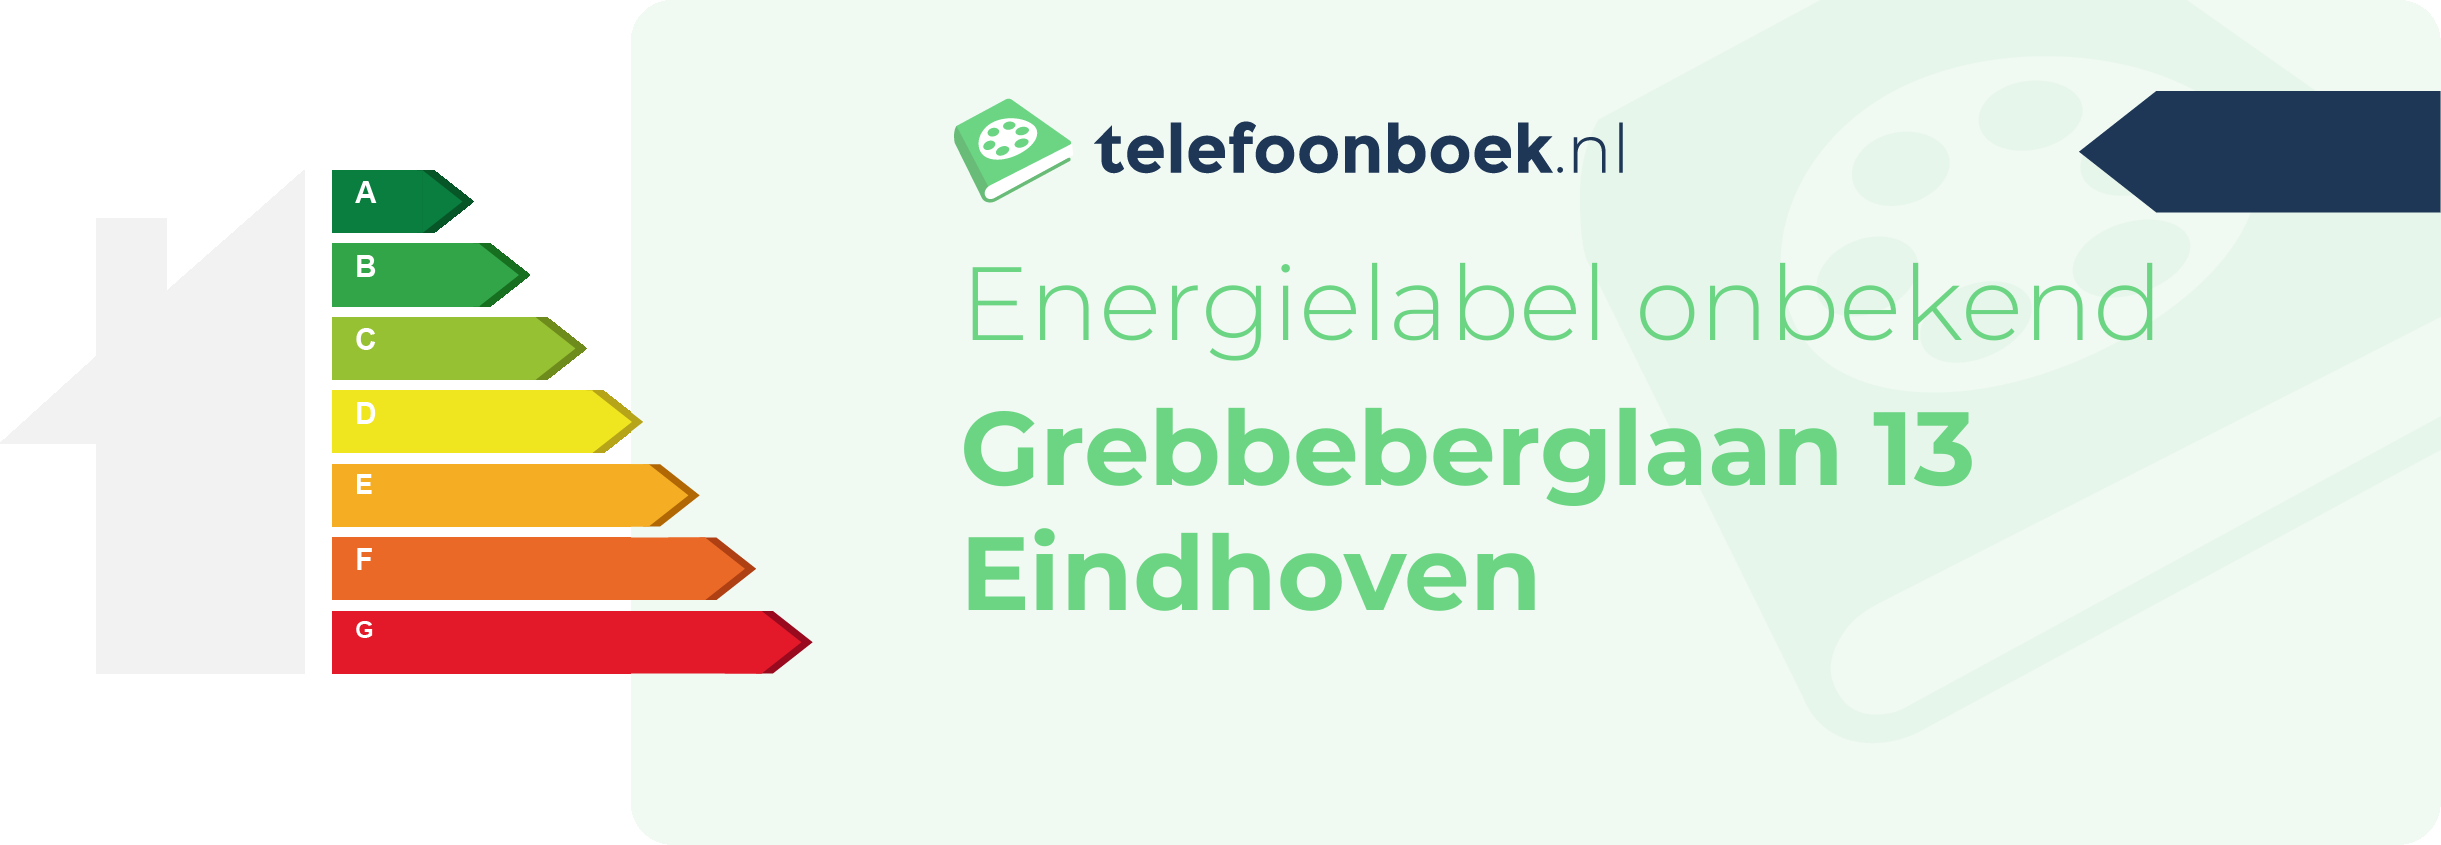 Energielabel Grebbeberglaan 13 Eindhoven